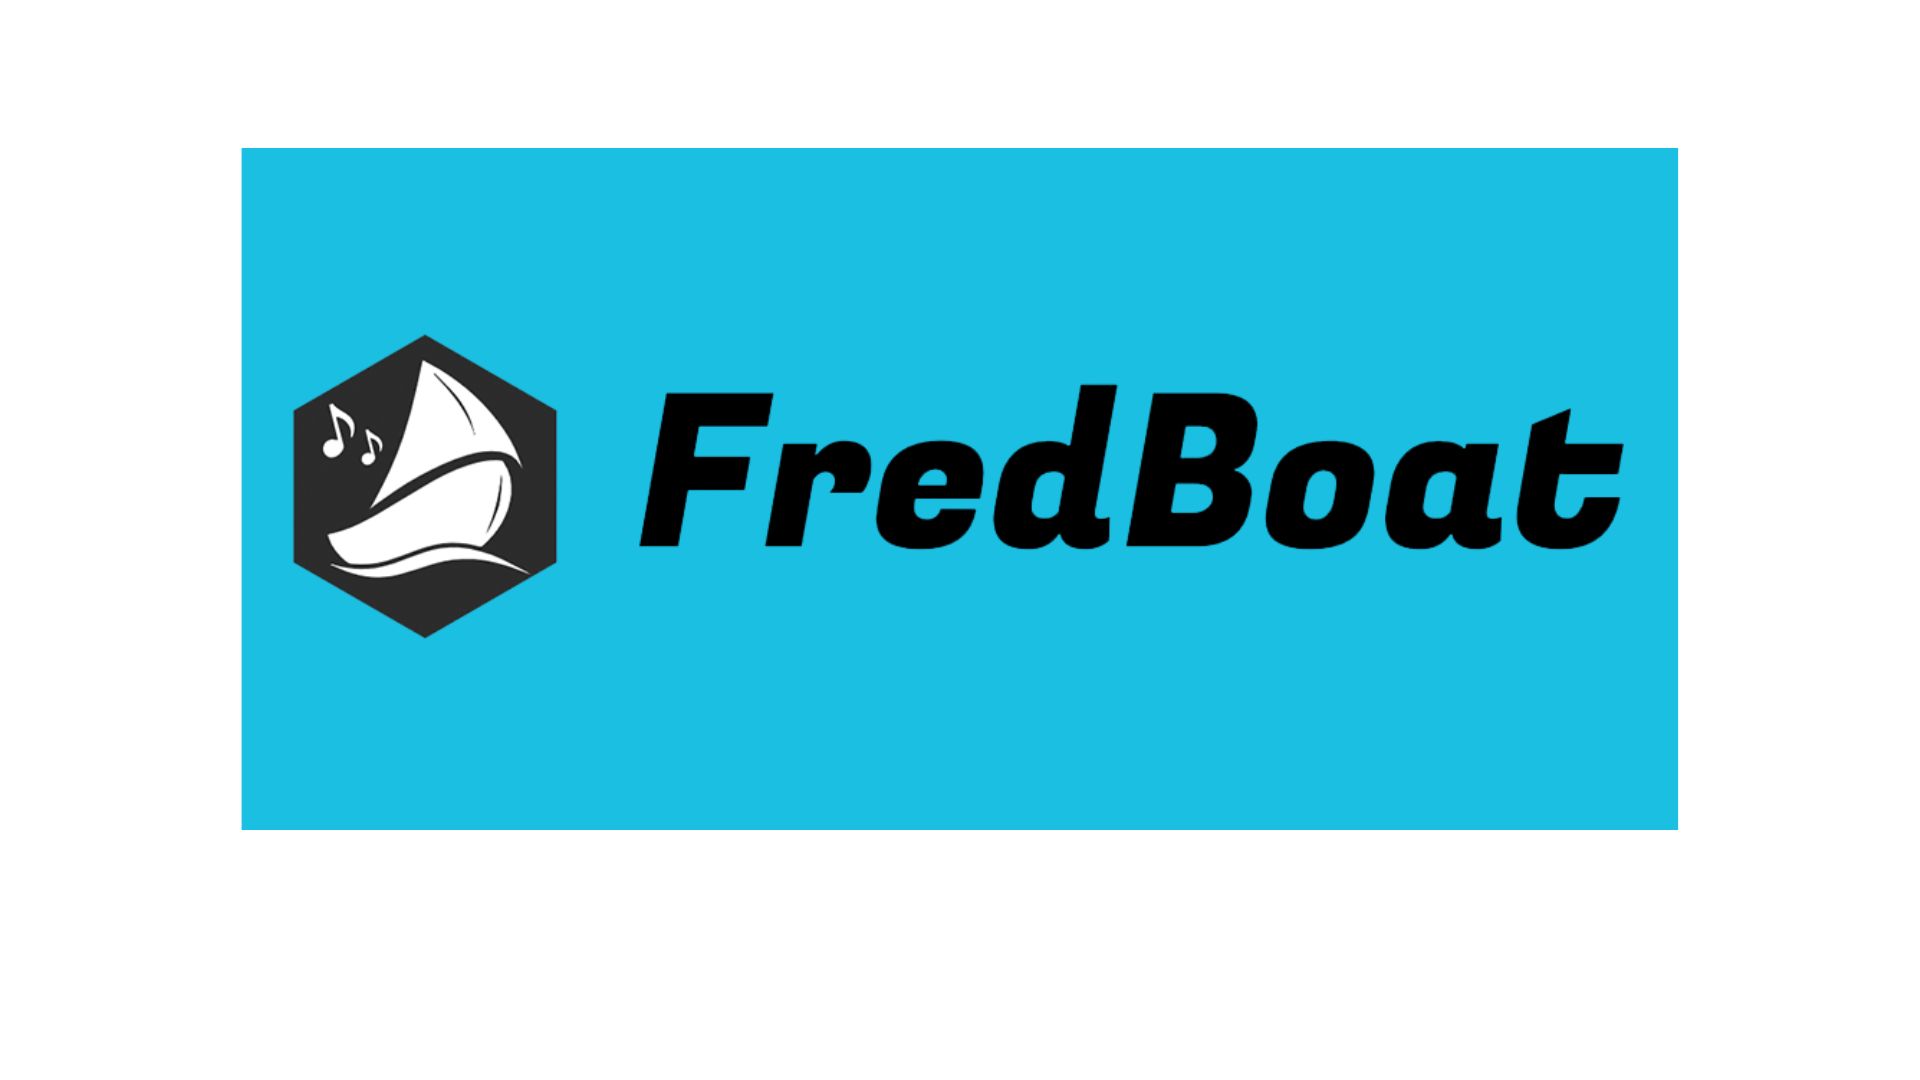 fredboat